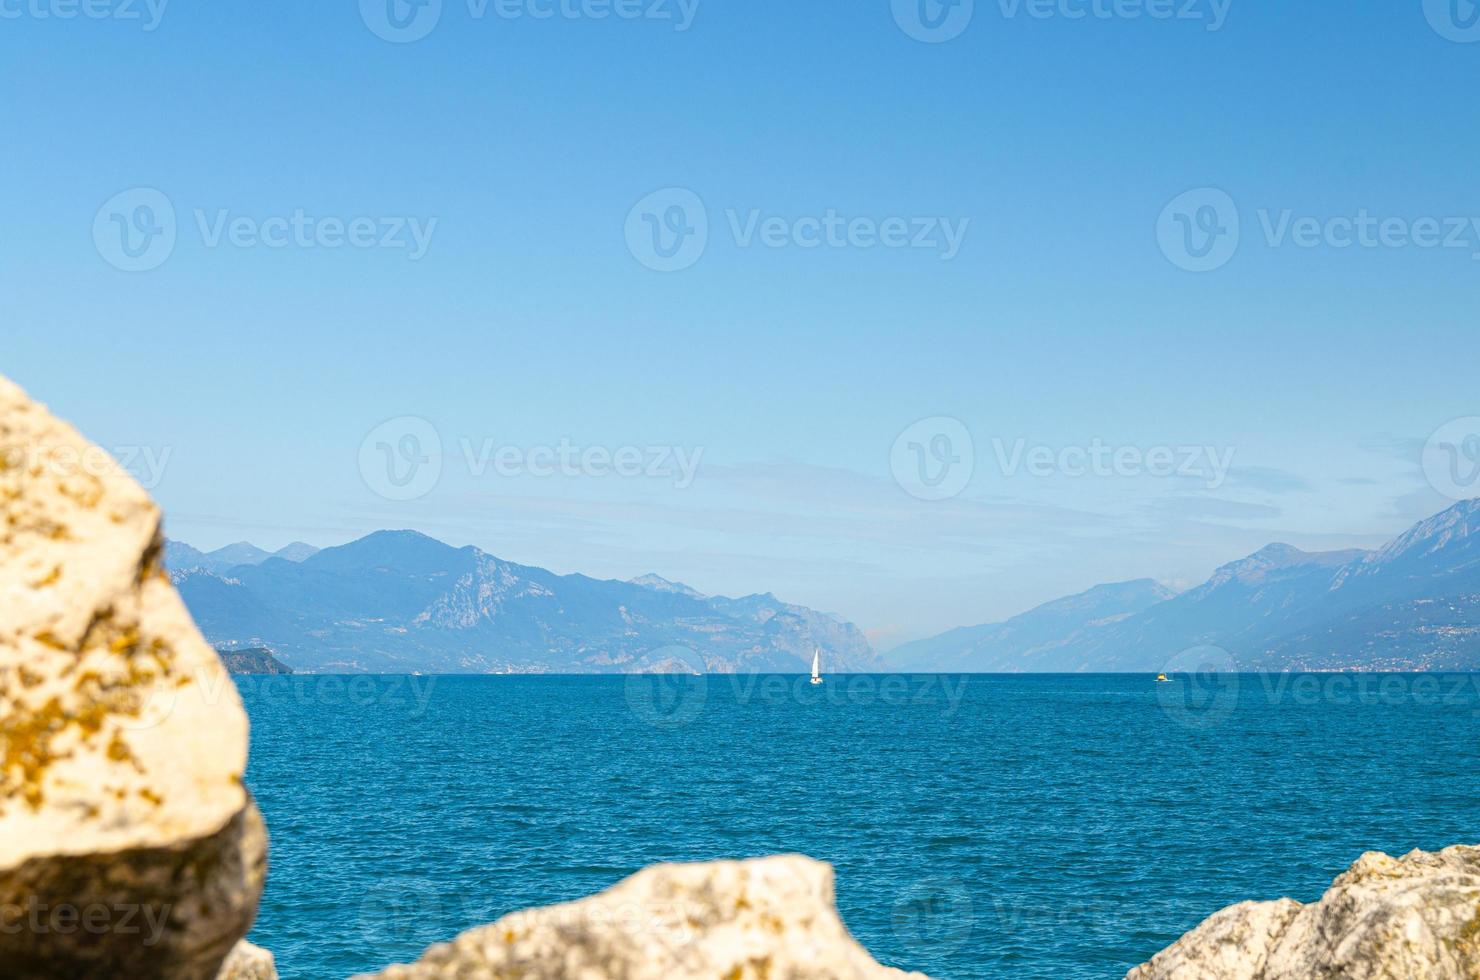 piccola barca a vela sul lago di garda acque azzurre con catena montuosa del monte baldo foto